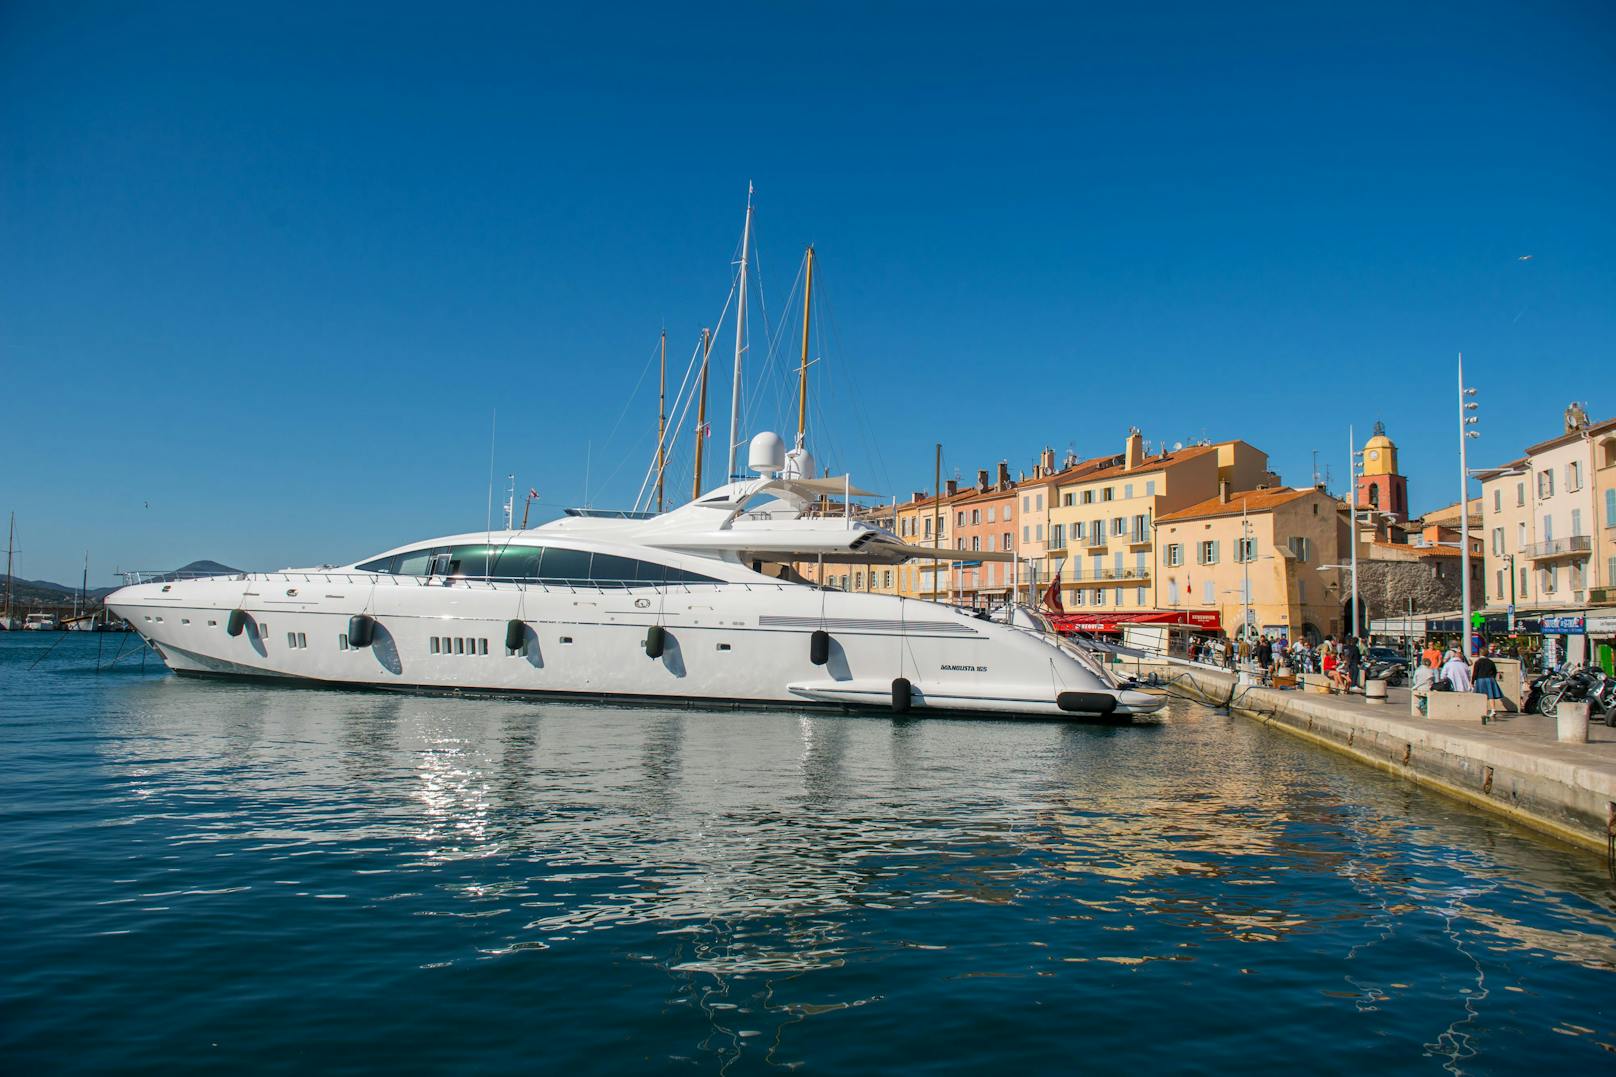 St. Tropez gilt mit seinen pompösen Yachten als Luxus-Urlaubsort.